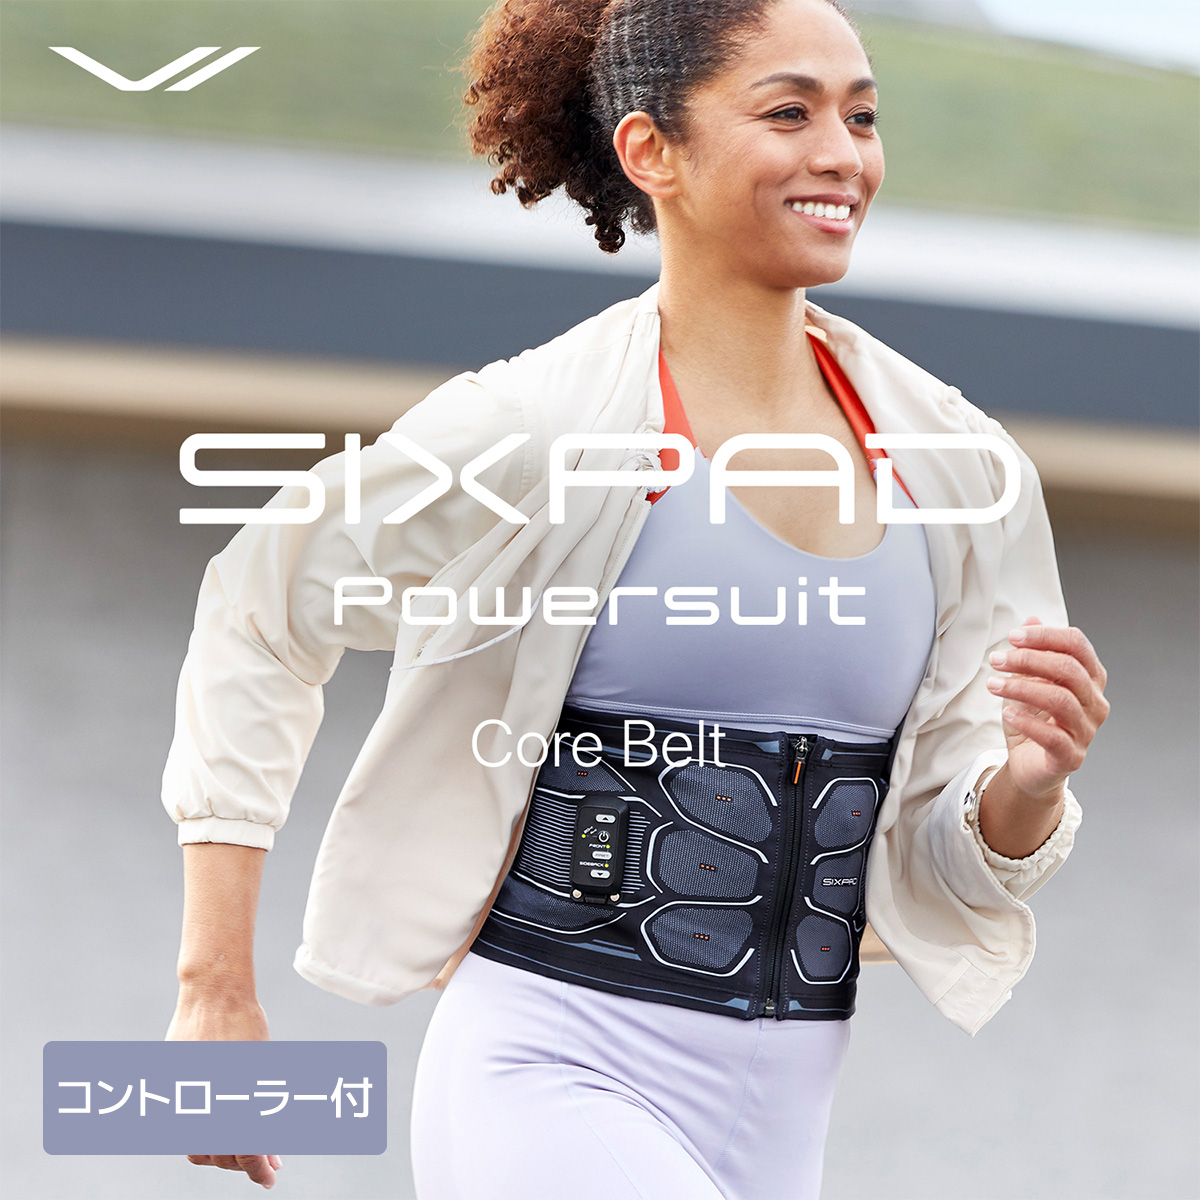 SIXPAD Powersuit Core Belt Lサイズ 専用コントローラーセット